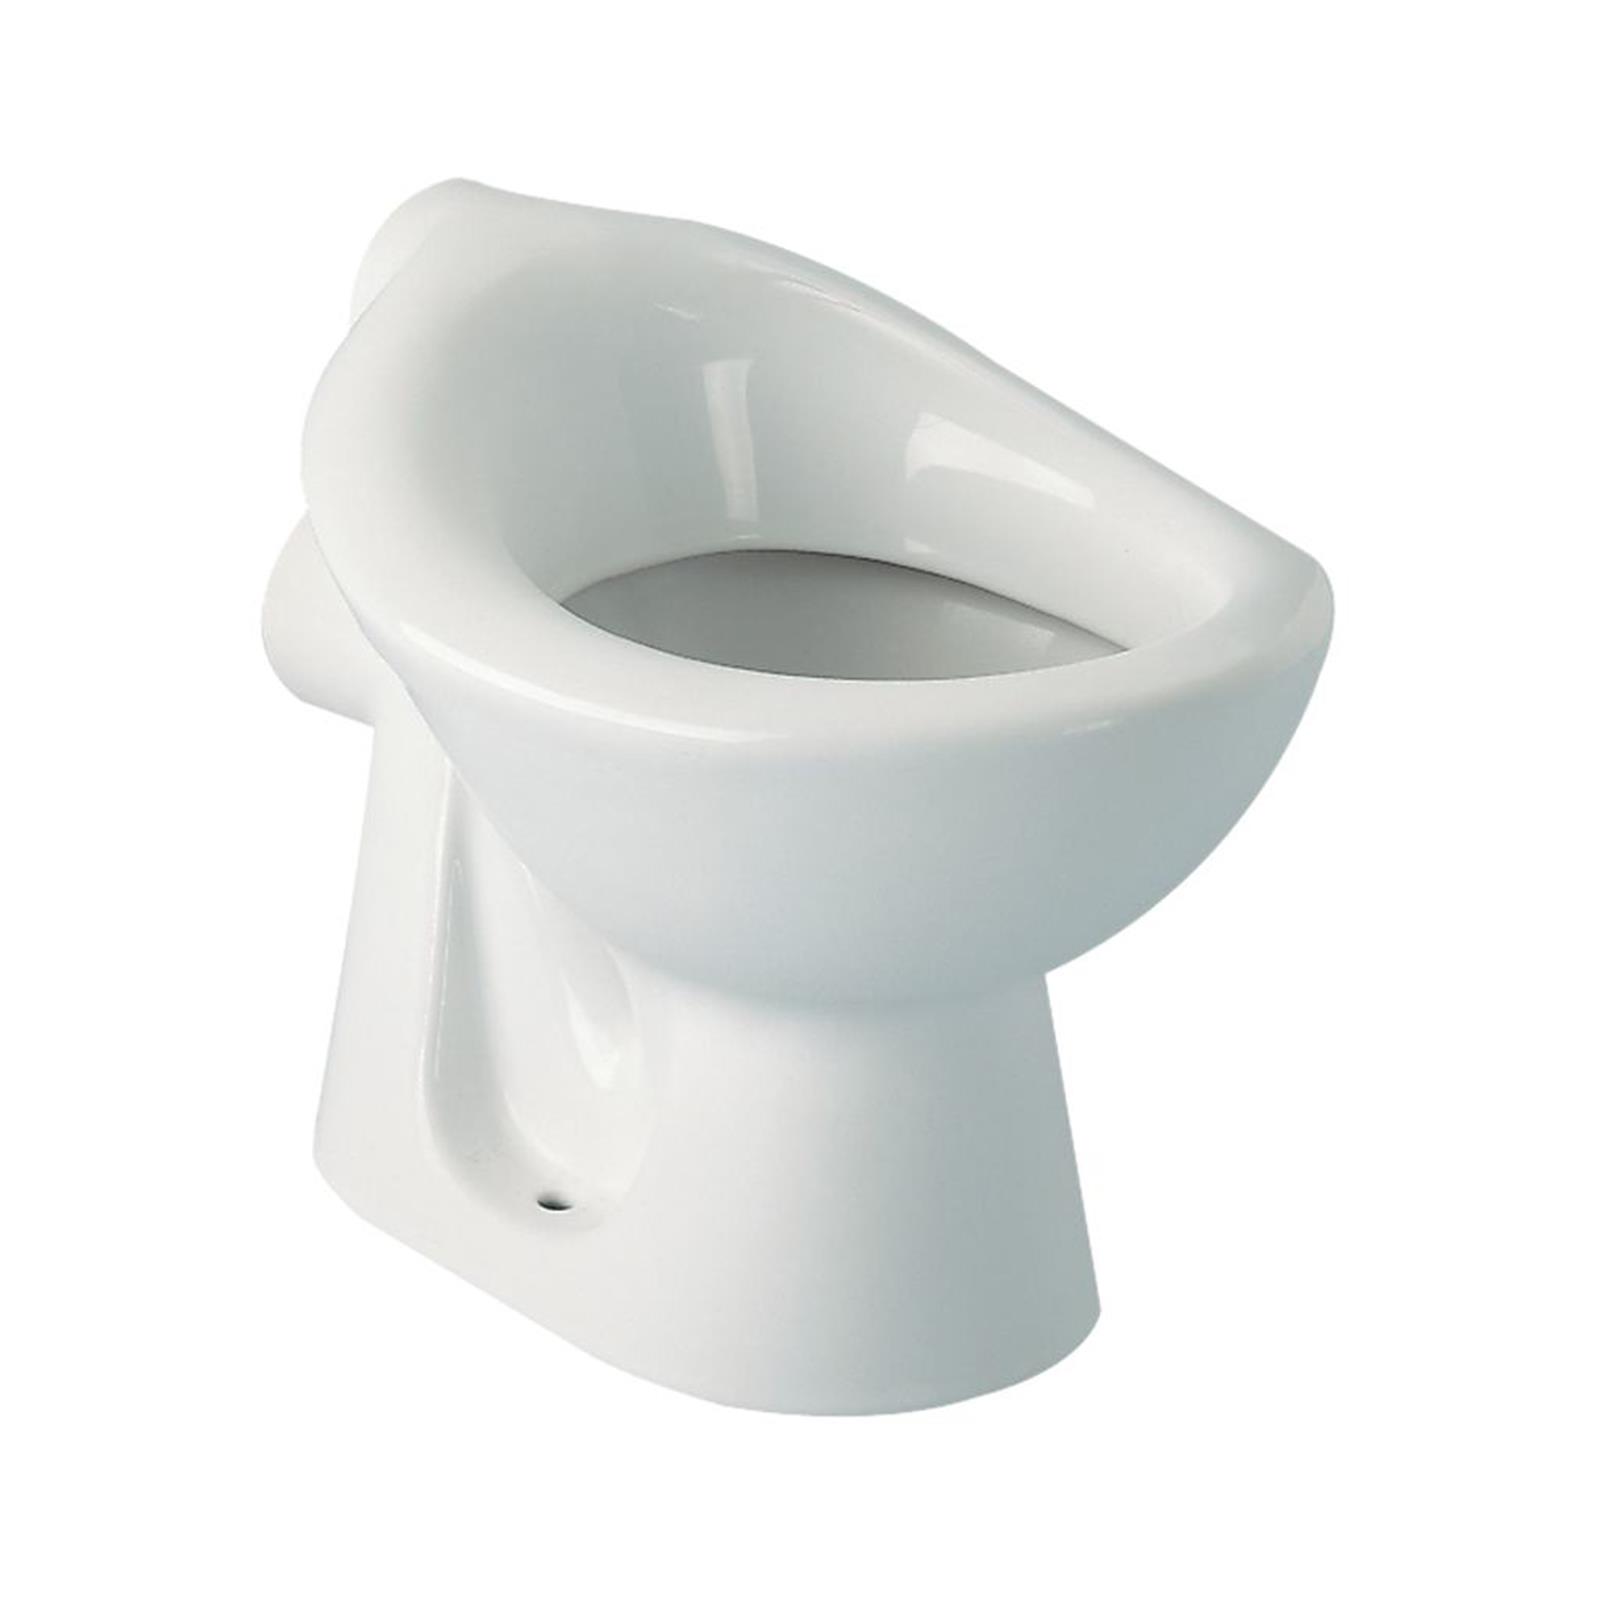 Cuvette WC crèche ou structure petite enfance - Hauteur: 24 cm Blanc